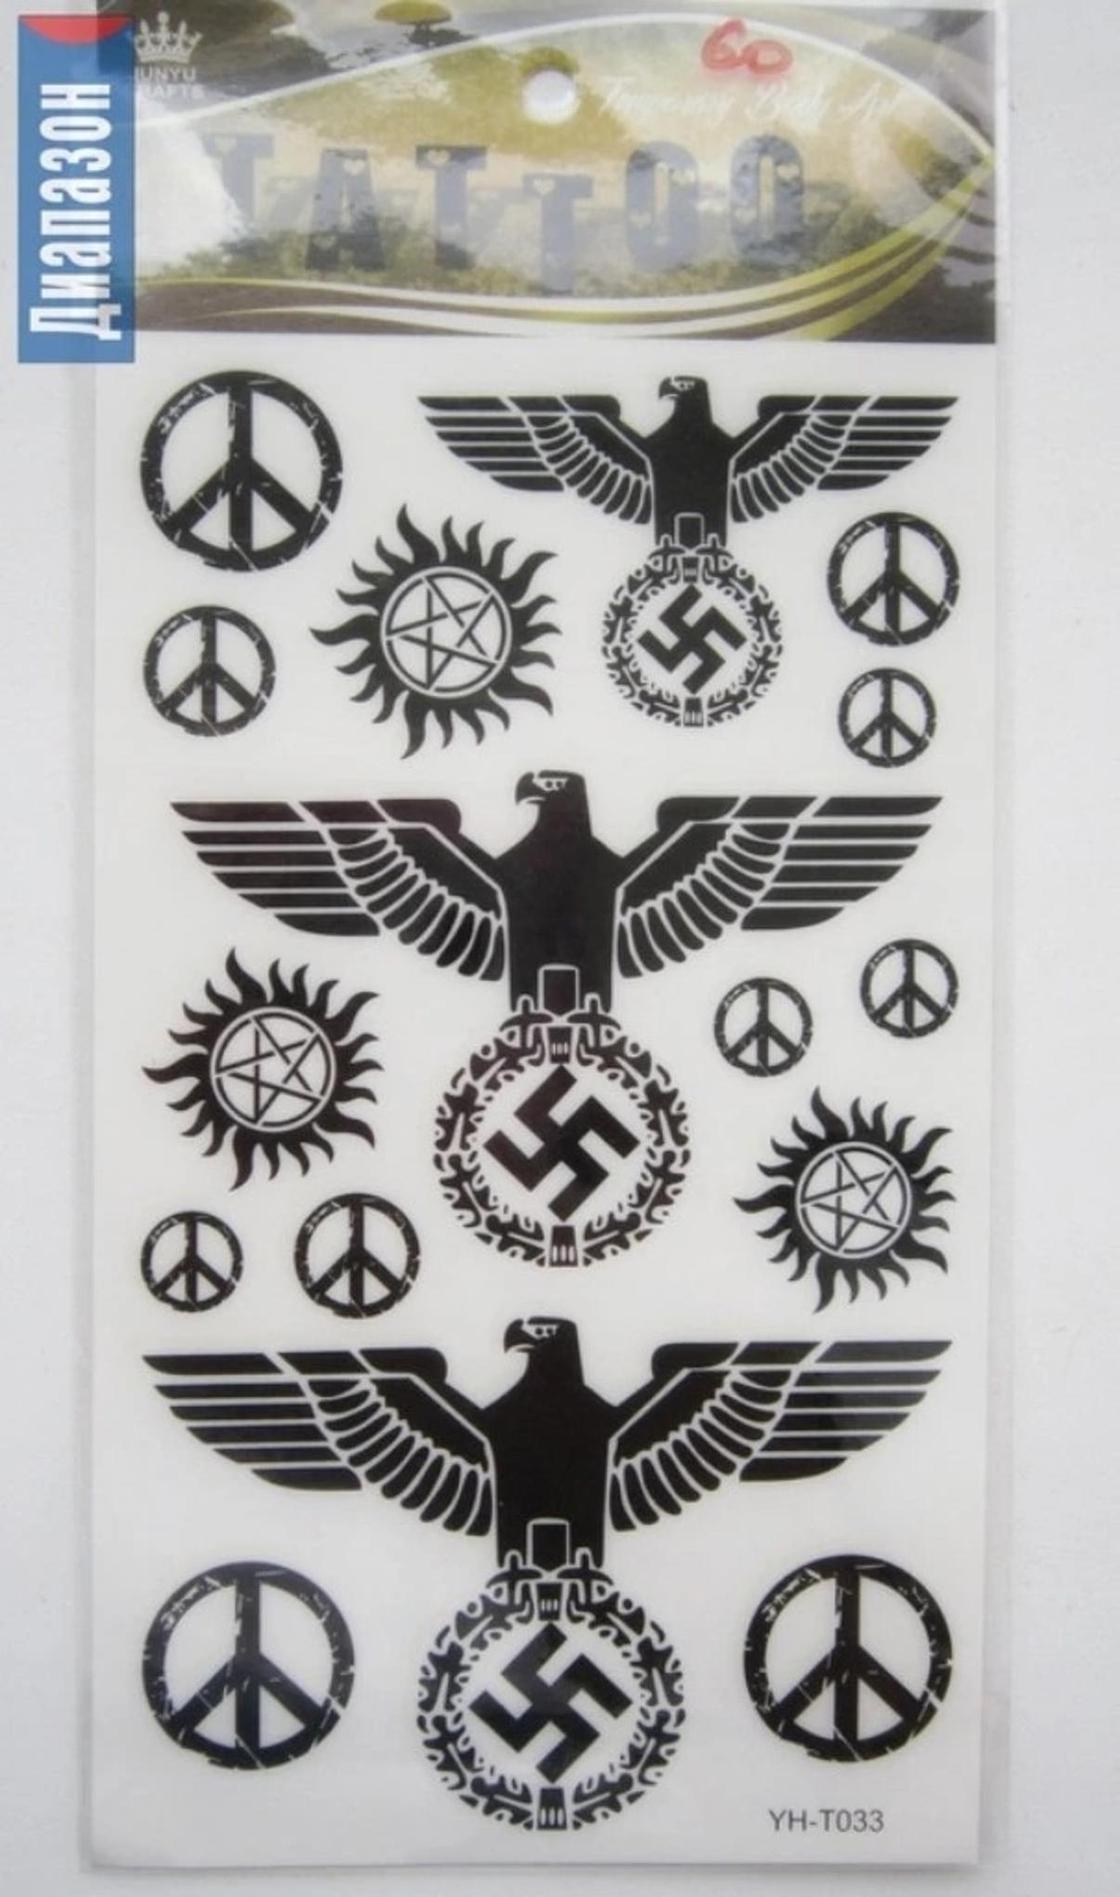 Наклейки с фашистской символикой продают в магазине канцтоваров в Актобе